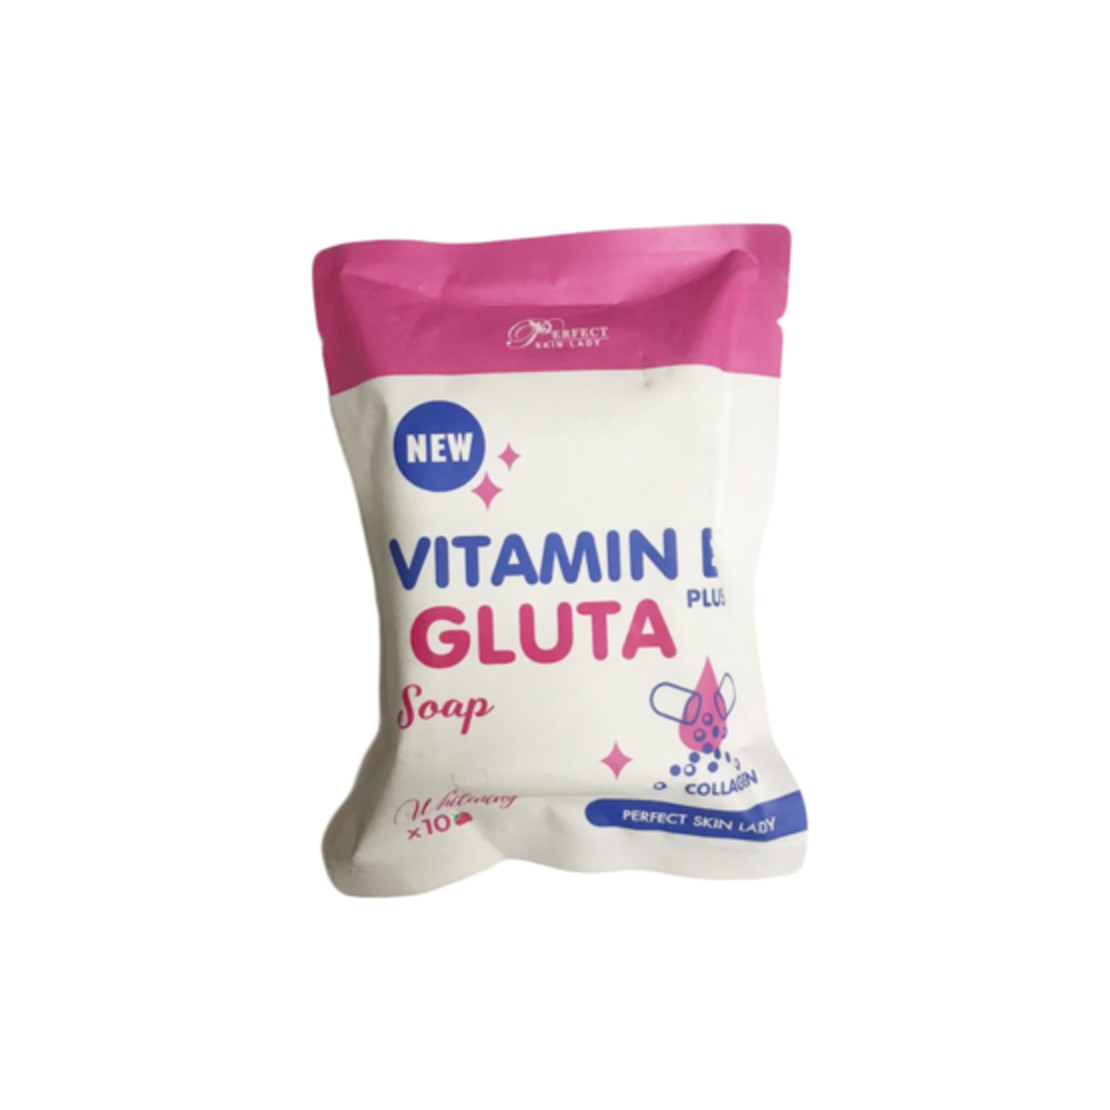 Vitamin E plus Gluta Soap